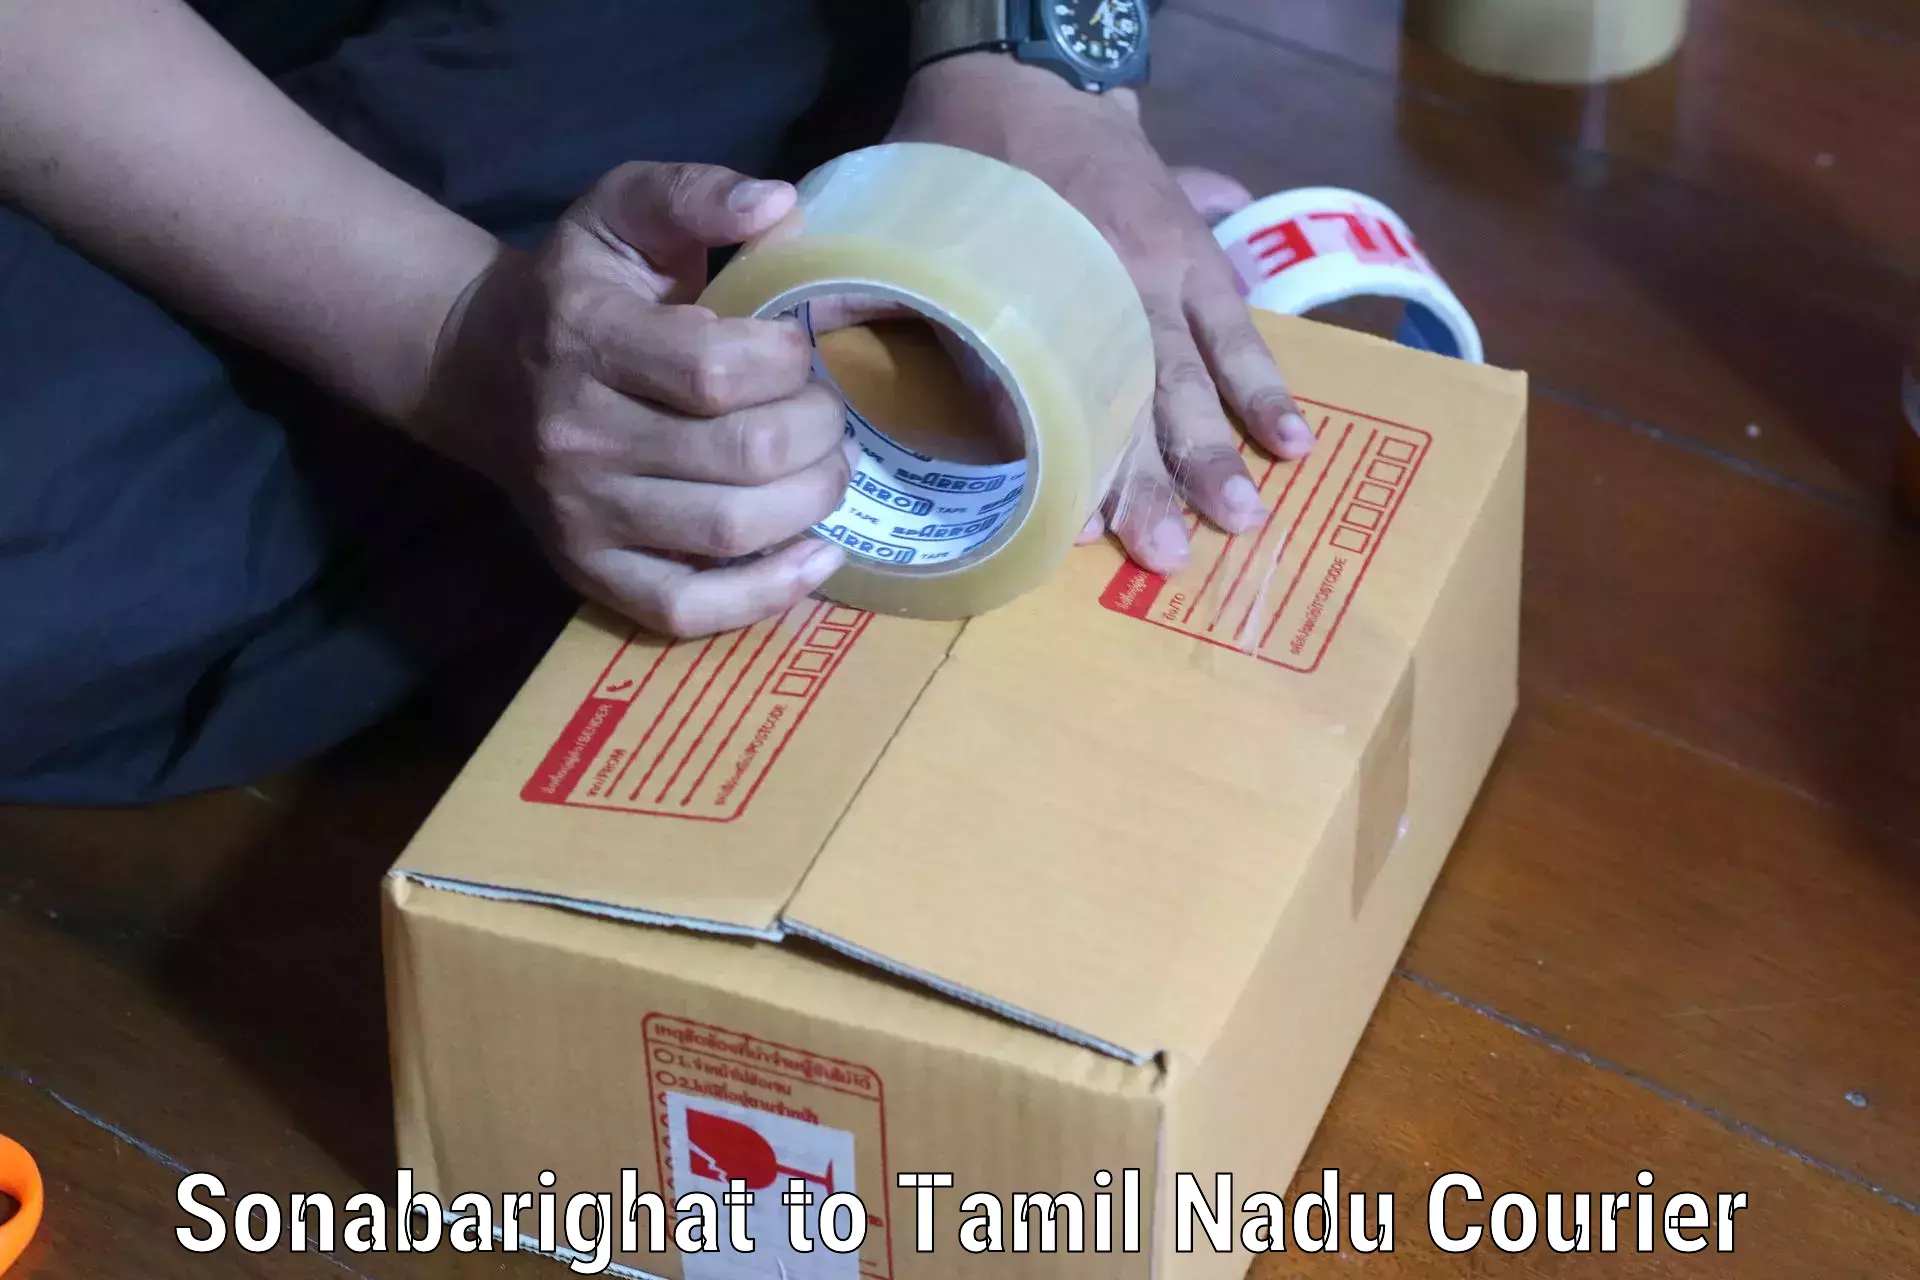 Courier service comparison Sonabarighat to IIIT Tiruchirappalli